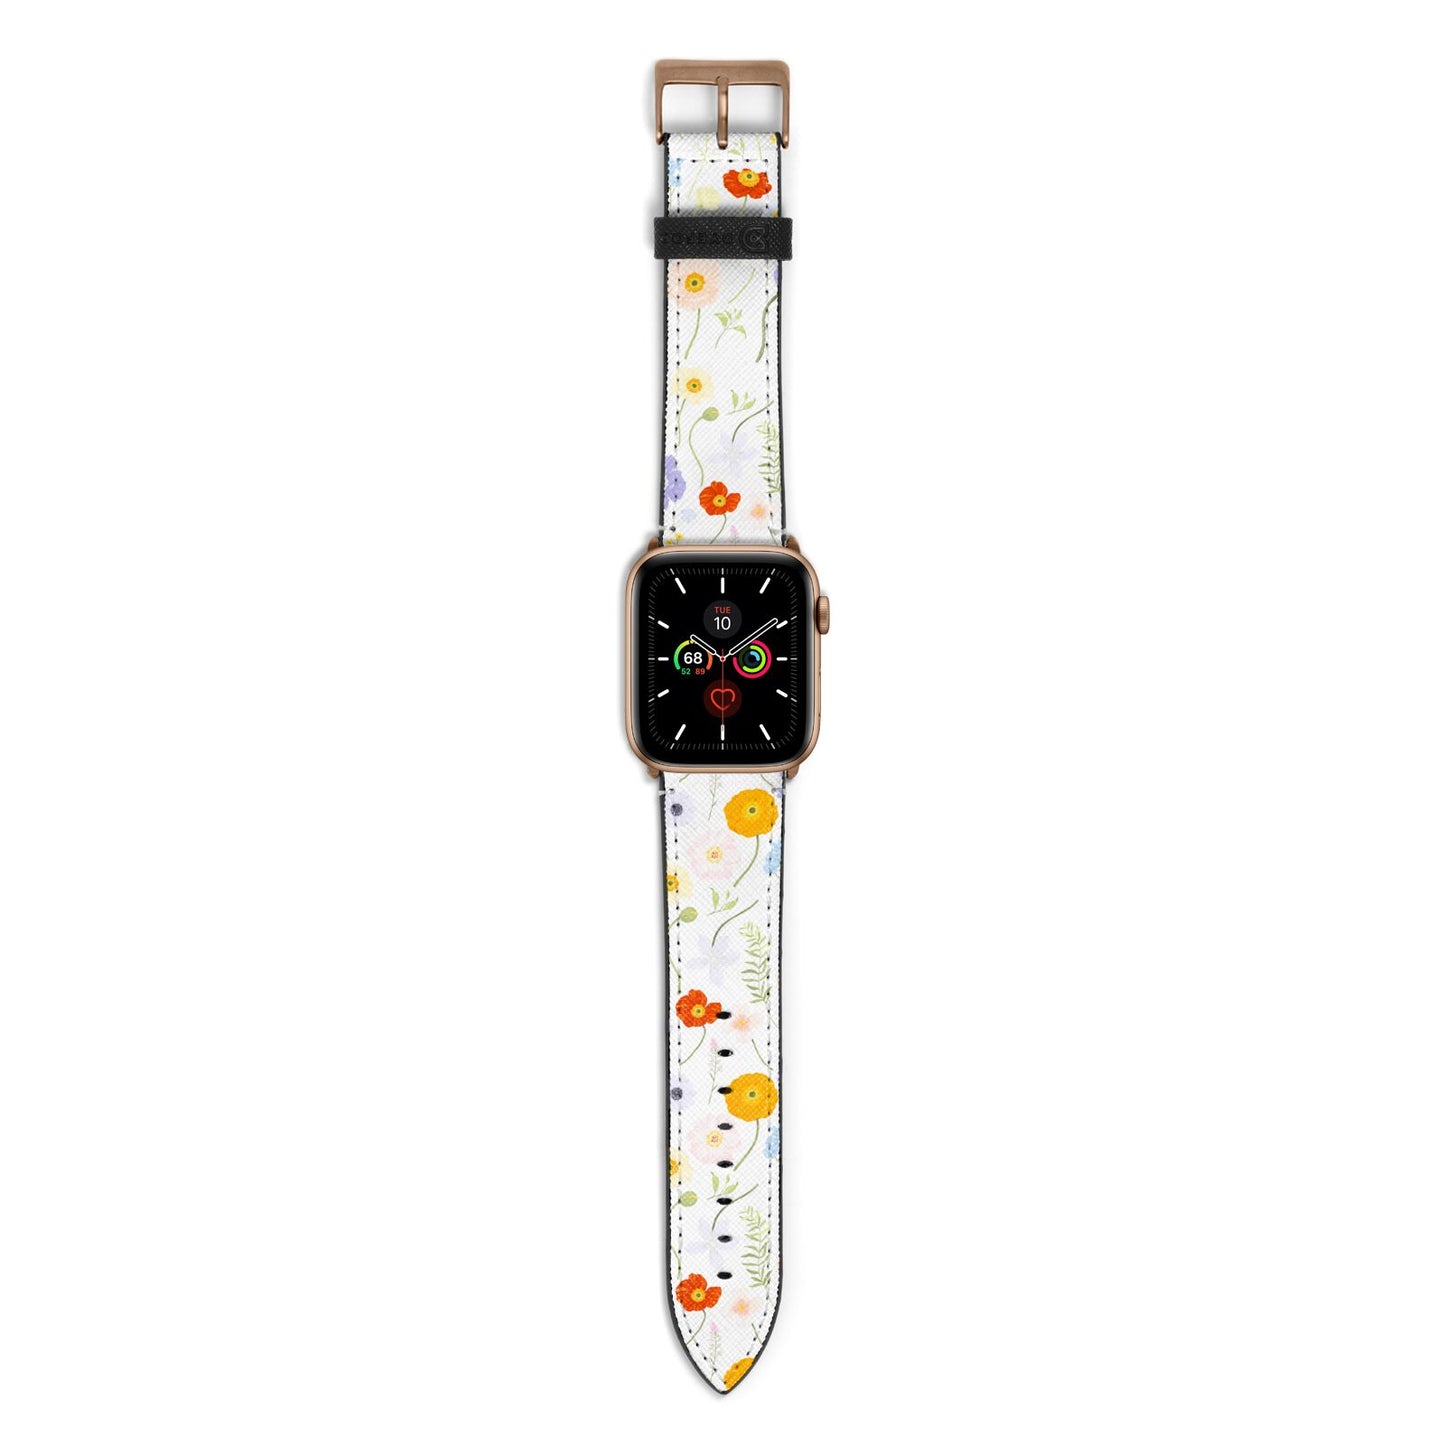 Wild Flower Apple Watch Strap with Gold Hardware